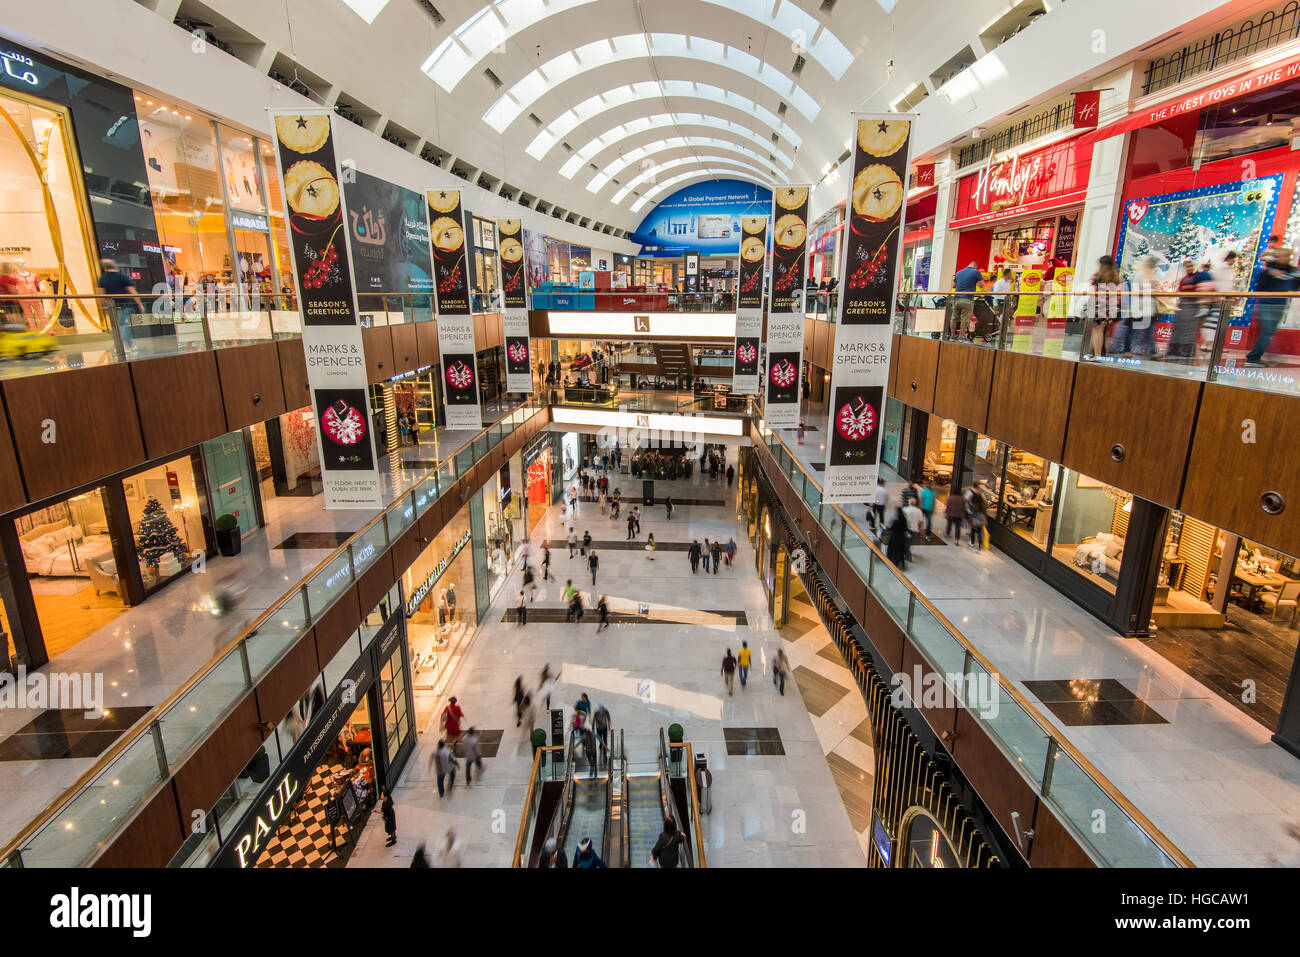 Innenansicht der Dubai Mall, das größte Einkaufszentrum der Welt durch Gesamtfläche, Dubai, Vereinigte Arabische Emirate Stockfoto